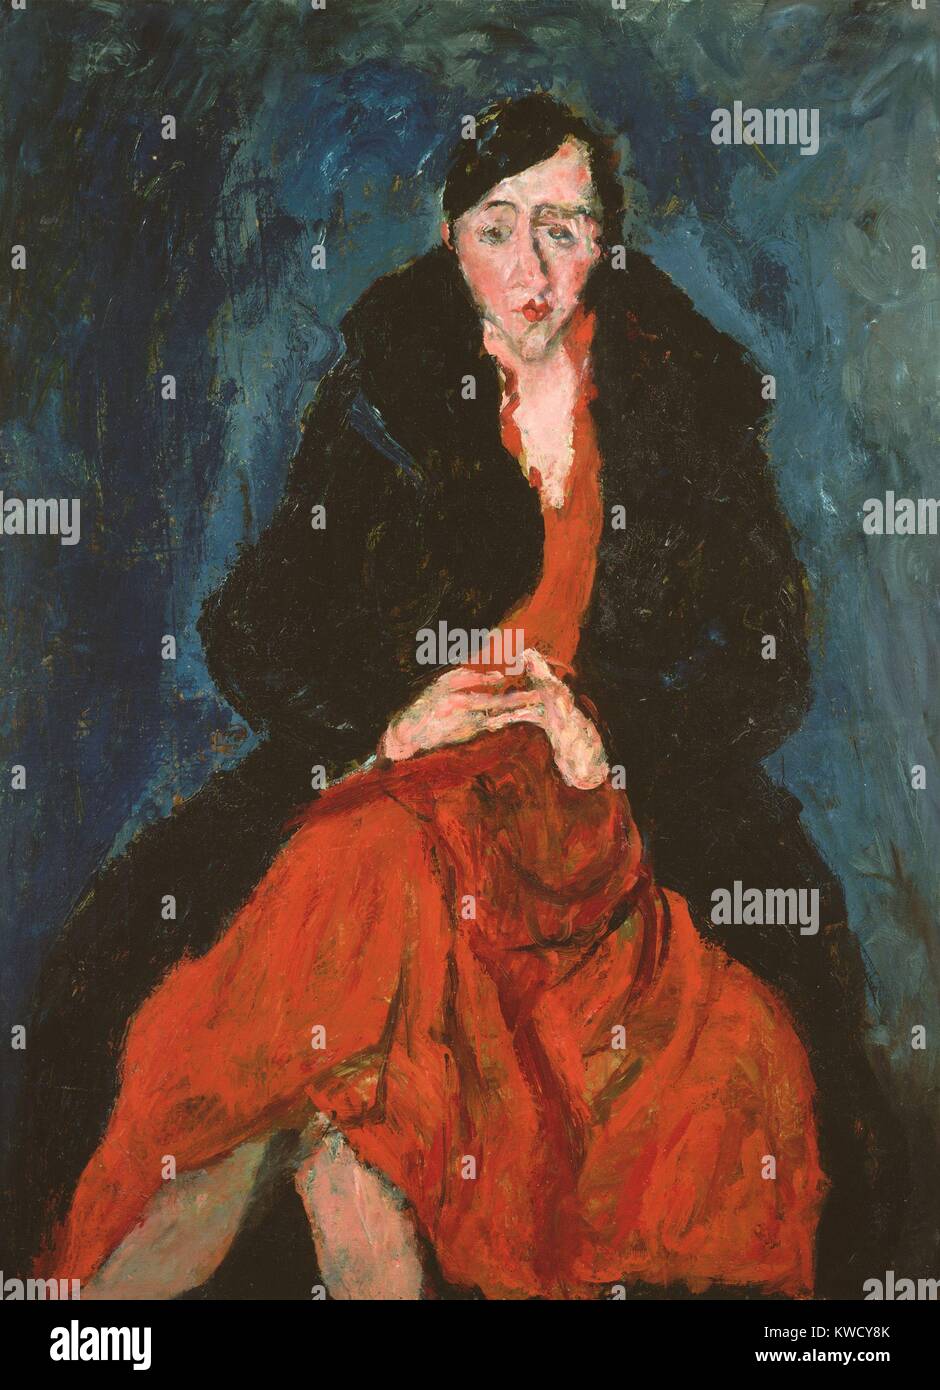 Ritratto di Madeleine Castaing, da Chaim Soutine, 1929, Russo espressionista francese la pittura ad olio. Madeleine Castaing e suo marito erano i suoi patroni quando dipinse questa tela (BSLOC 2017 5 150) Foto Stock